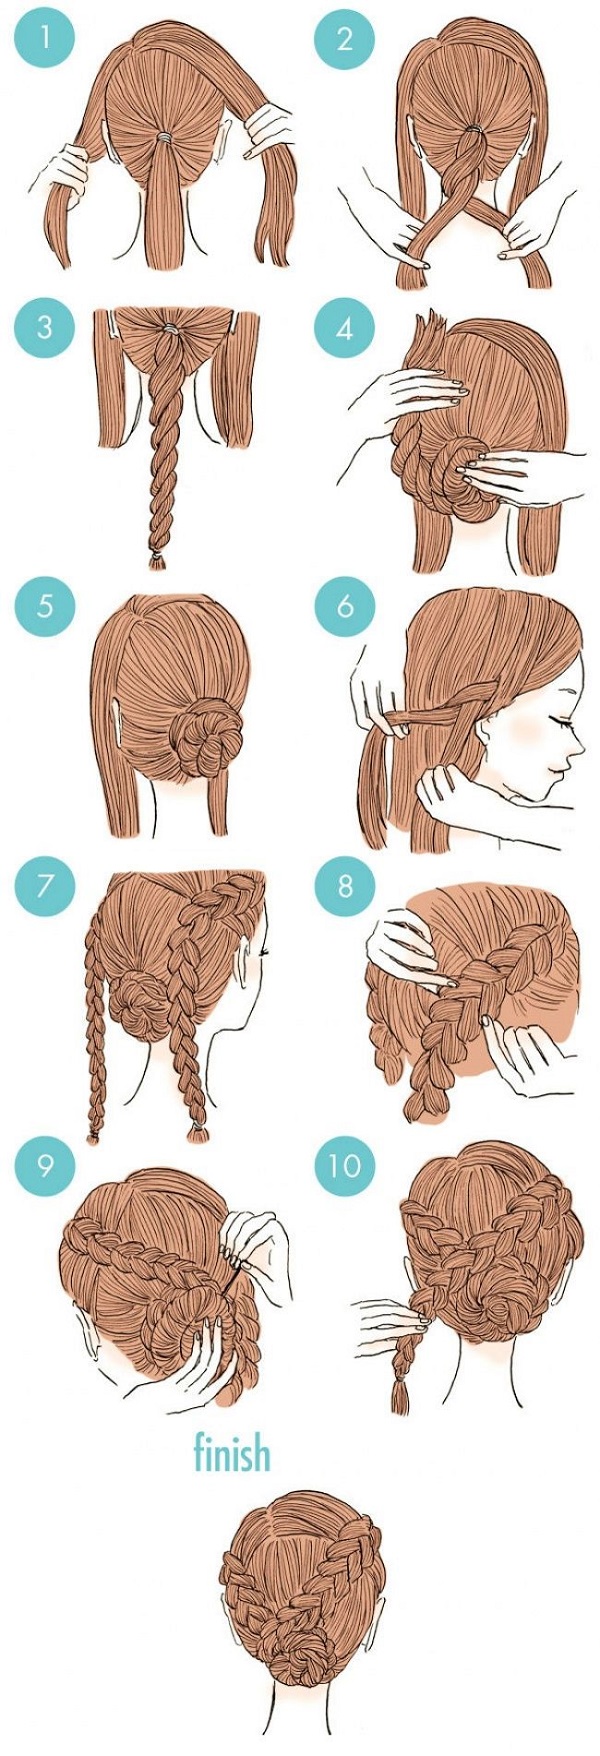 Bước 1: Bạn chừa hai phần tóc ở hai bên để thắt bím và buộc phần còn lại lại. Bước 2: Với phần bạn vừa cố định, chia làm hai phần và xoắn lại với nhau cho đến đuôi tóc, sau đó bạn dùng dây thun buộc chặt rồi búi lại thành cuộn tròn. Nếu búi tóc không đủ chắc, bạn có thể sẽ cần đến sự trợ giúp của kẹp tăm. Bước 3: Với hai phần tóc hai bên, bạn thực hiện giống nhau: lấy một lọn tóc nhỏ để tết, mỗi lần tết lại lấy thêm một ít tóc. Sau khi tết đến đuôi tóc thì bạn cũng dùng dây thun buộc lại. Bước 4: Lấy hai bím tóc bạn vừa tết xong quấn quanh búi tóc. Lưu ý là bạn nên đặt bím tóc bên phải sang bên trái và ngược lại. Nếu trước đó bạn có dùng kẹp tăm thì hai bím tóc này sẽ giúp bạn che lại, tuy nhiên sau khi quấn quanh búi tóc thì bạn cũng cần kẹp tăm để cố định nên hãy lưu ý giấu kẹp tăm dưới tóc nhé.